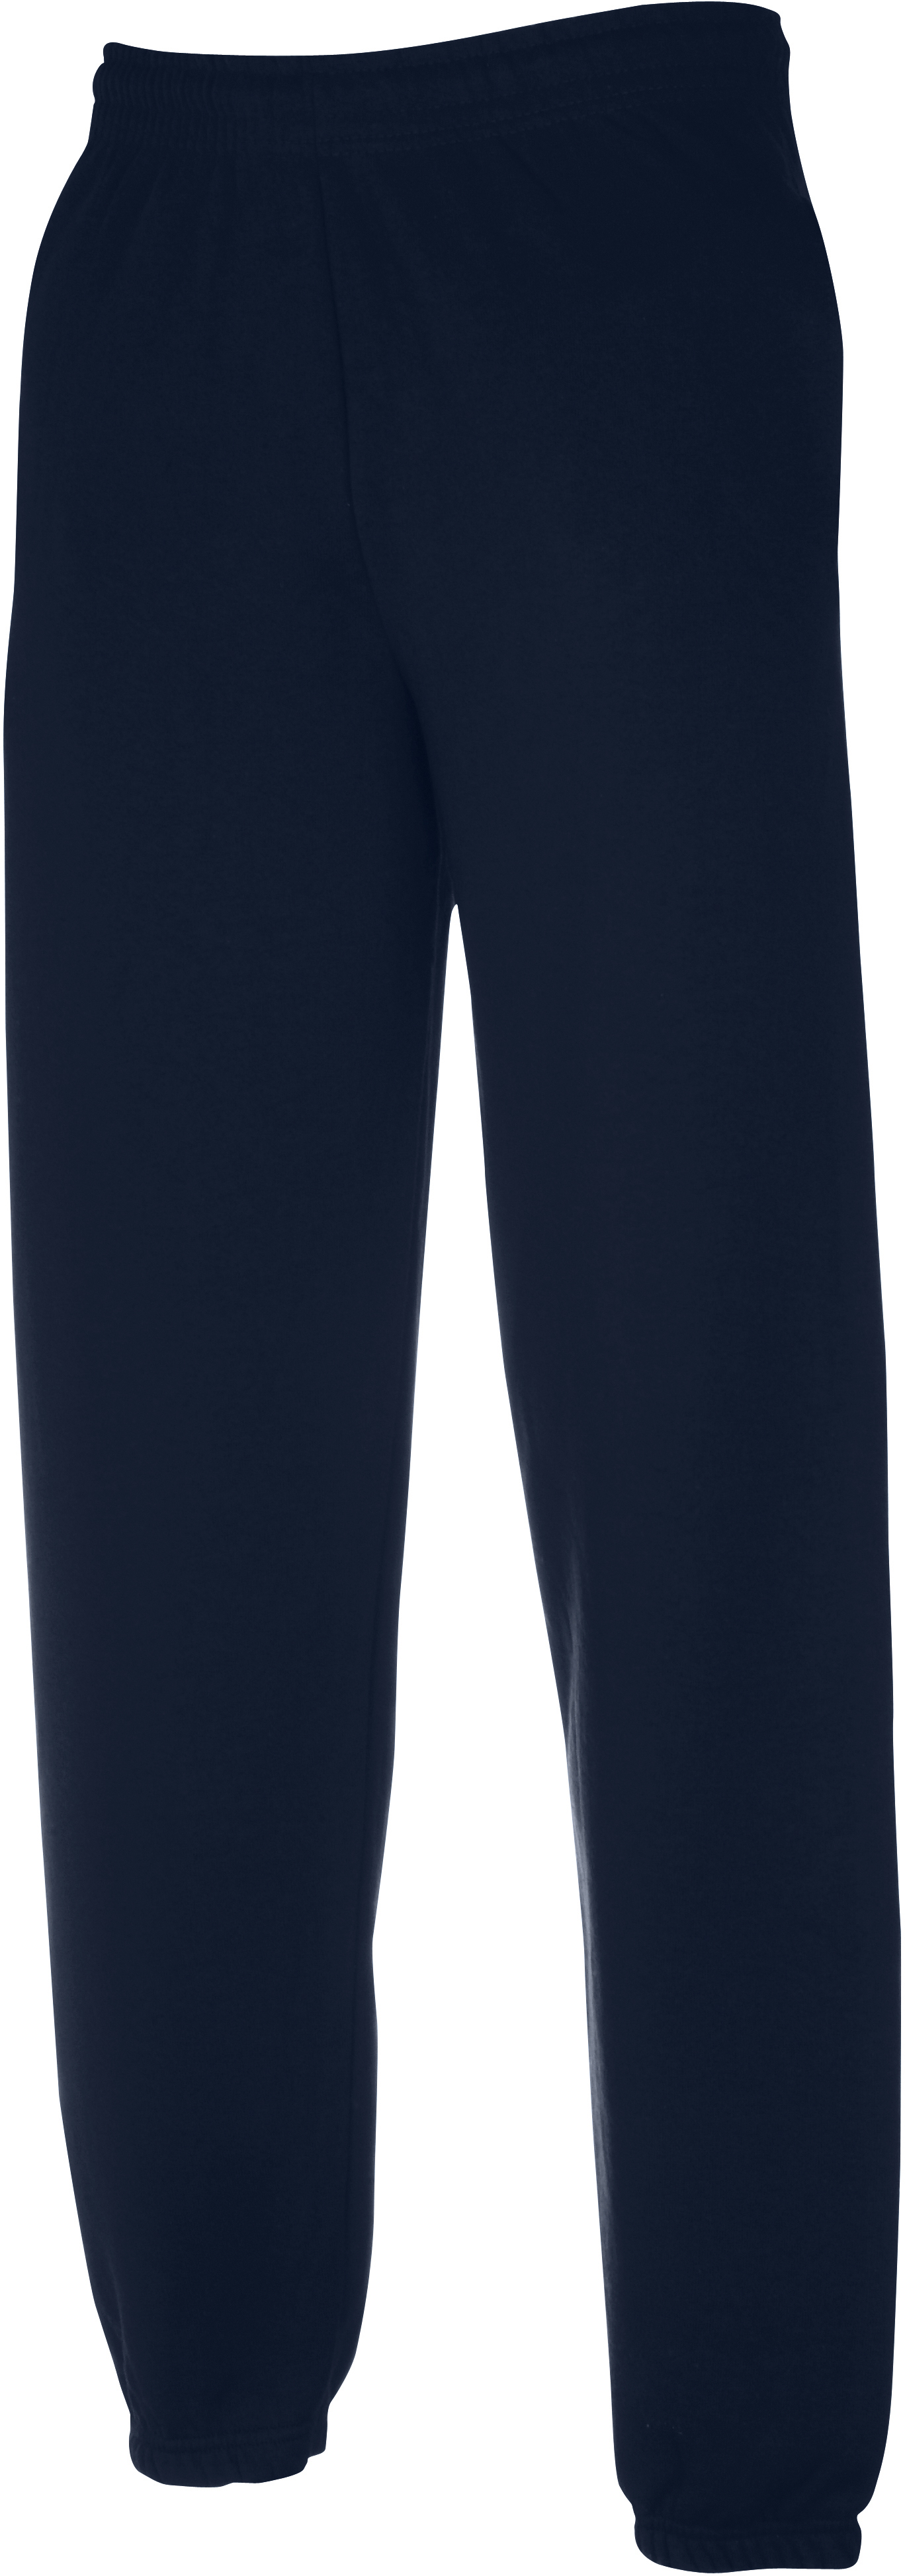 Pánské tepláky Classic Elasticated Cuff Jog Pants 64026 Barva: dark navy, Velikost: XL